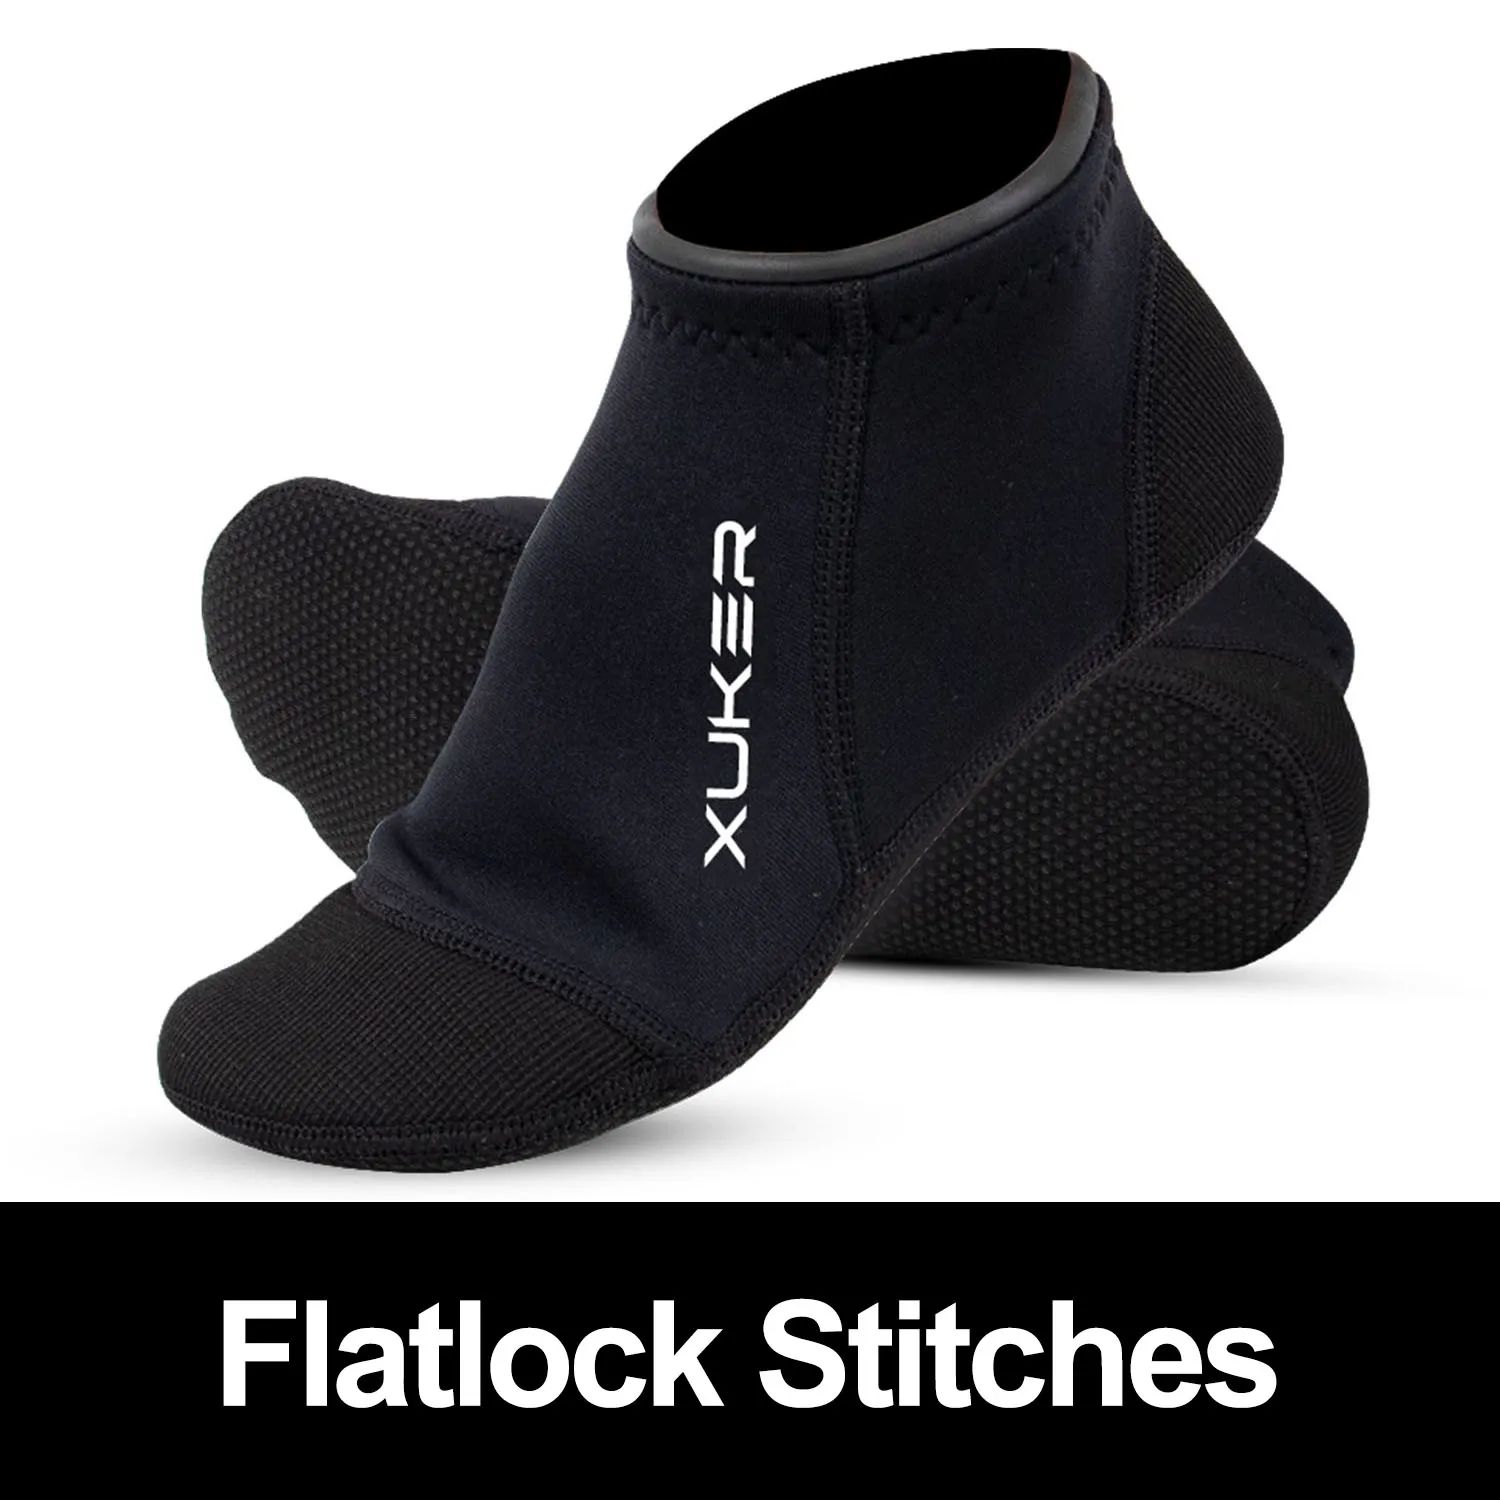 Color:flatlock stitchesShoe Size:S